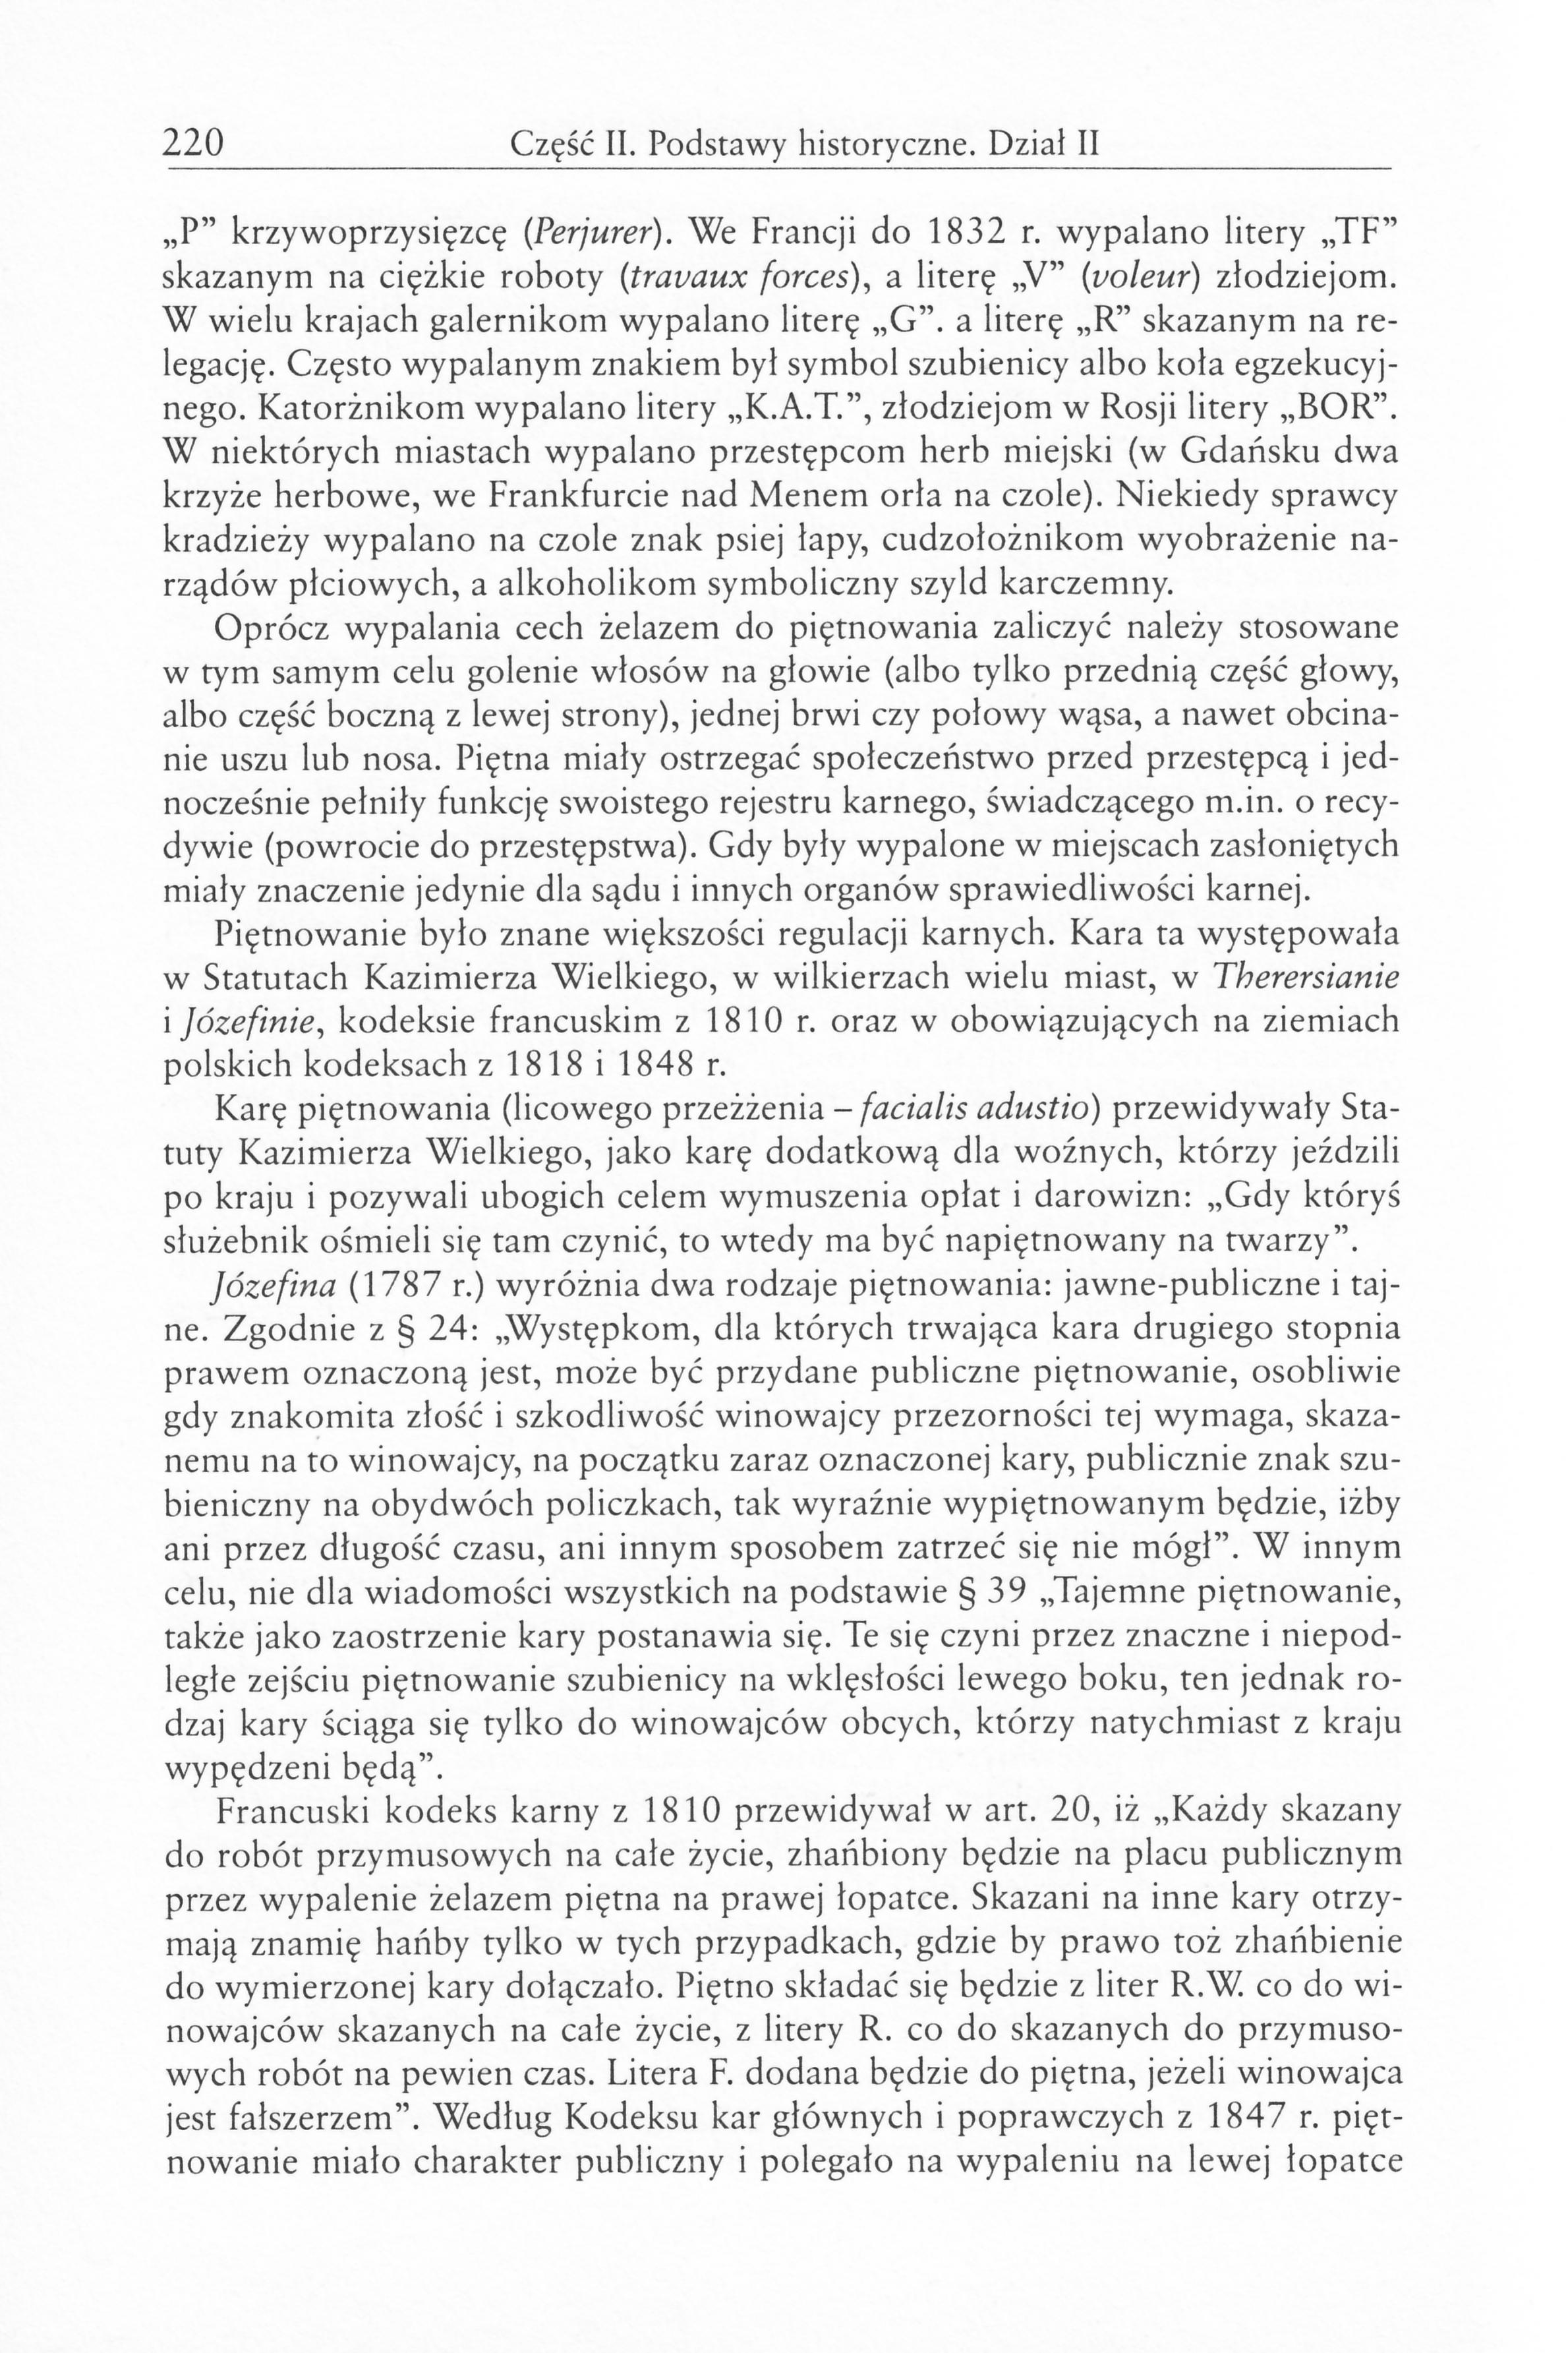 Kara podstawy filozoficzne i historyczne - Warylewski - Kara0221.jpg